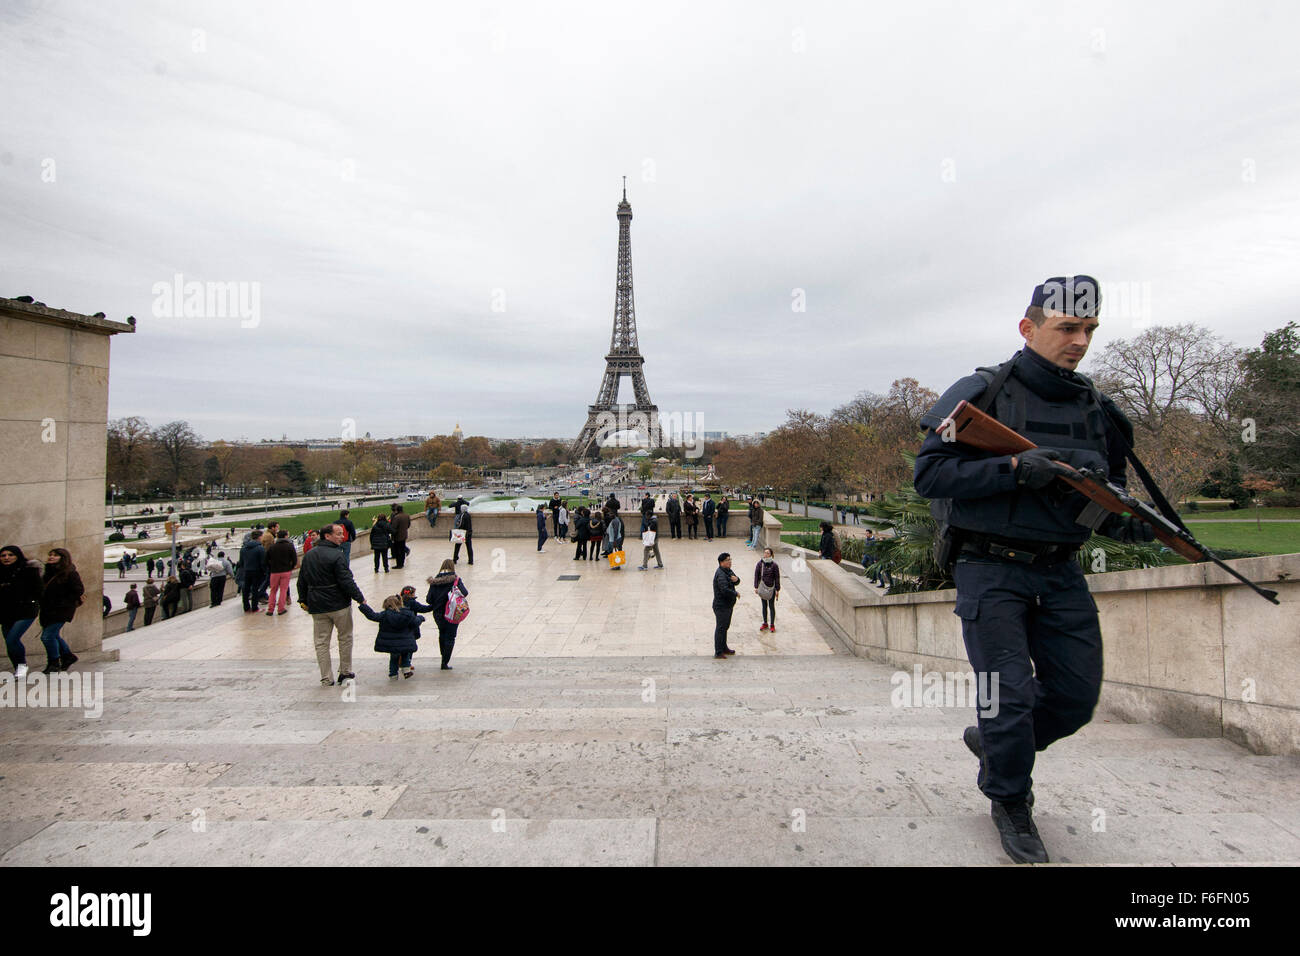 14 de noviembre de 2015, París, Francia, a raíz de los ataques terroristas, la Torre Eiffel fue cerrada por razones de 'seguridad' el sábado. Las fuerzas militares y las unidades de la policía antiterrorista patrullar la zona. Crédito: Leo novela/Alamy Live News Foto de stock